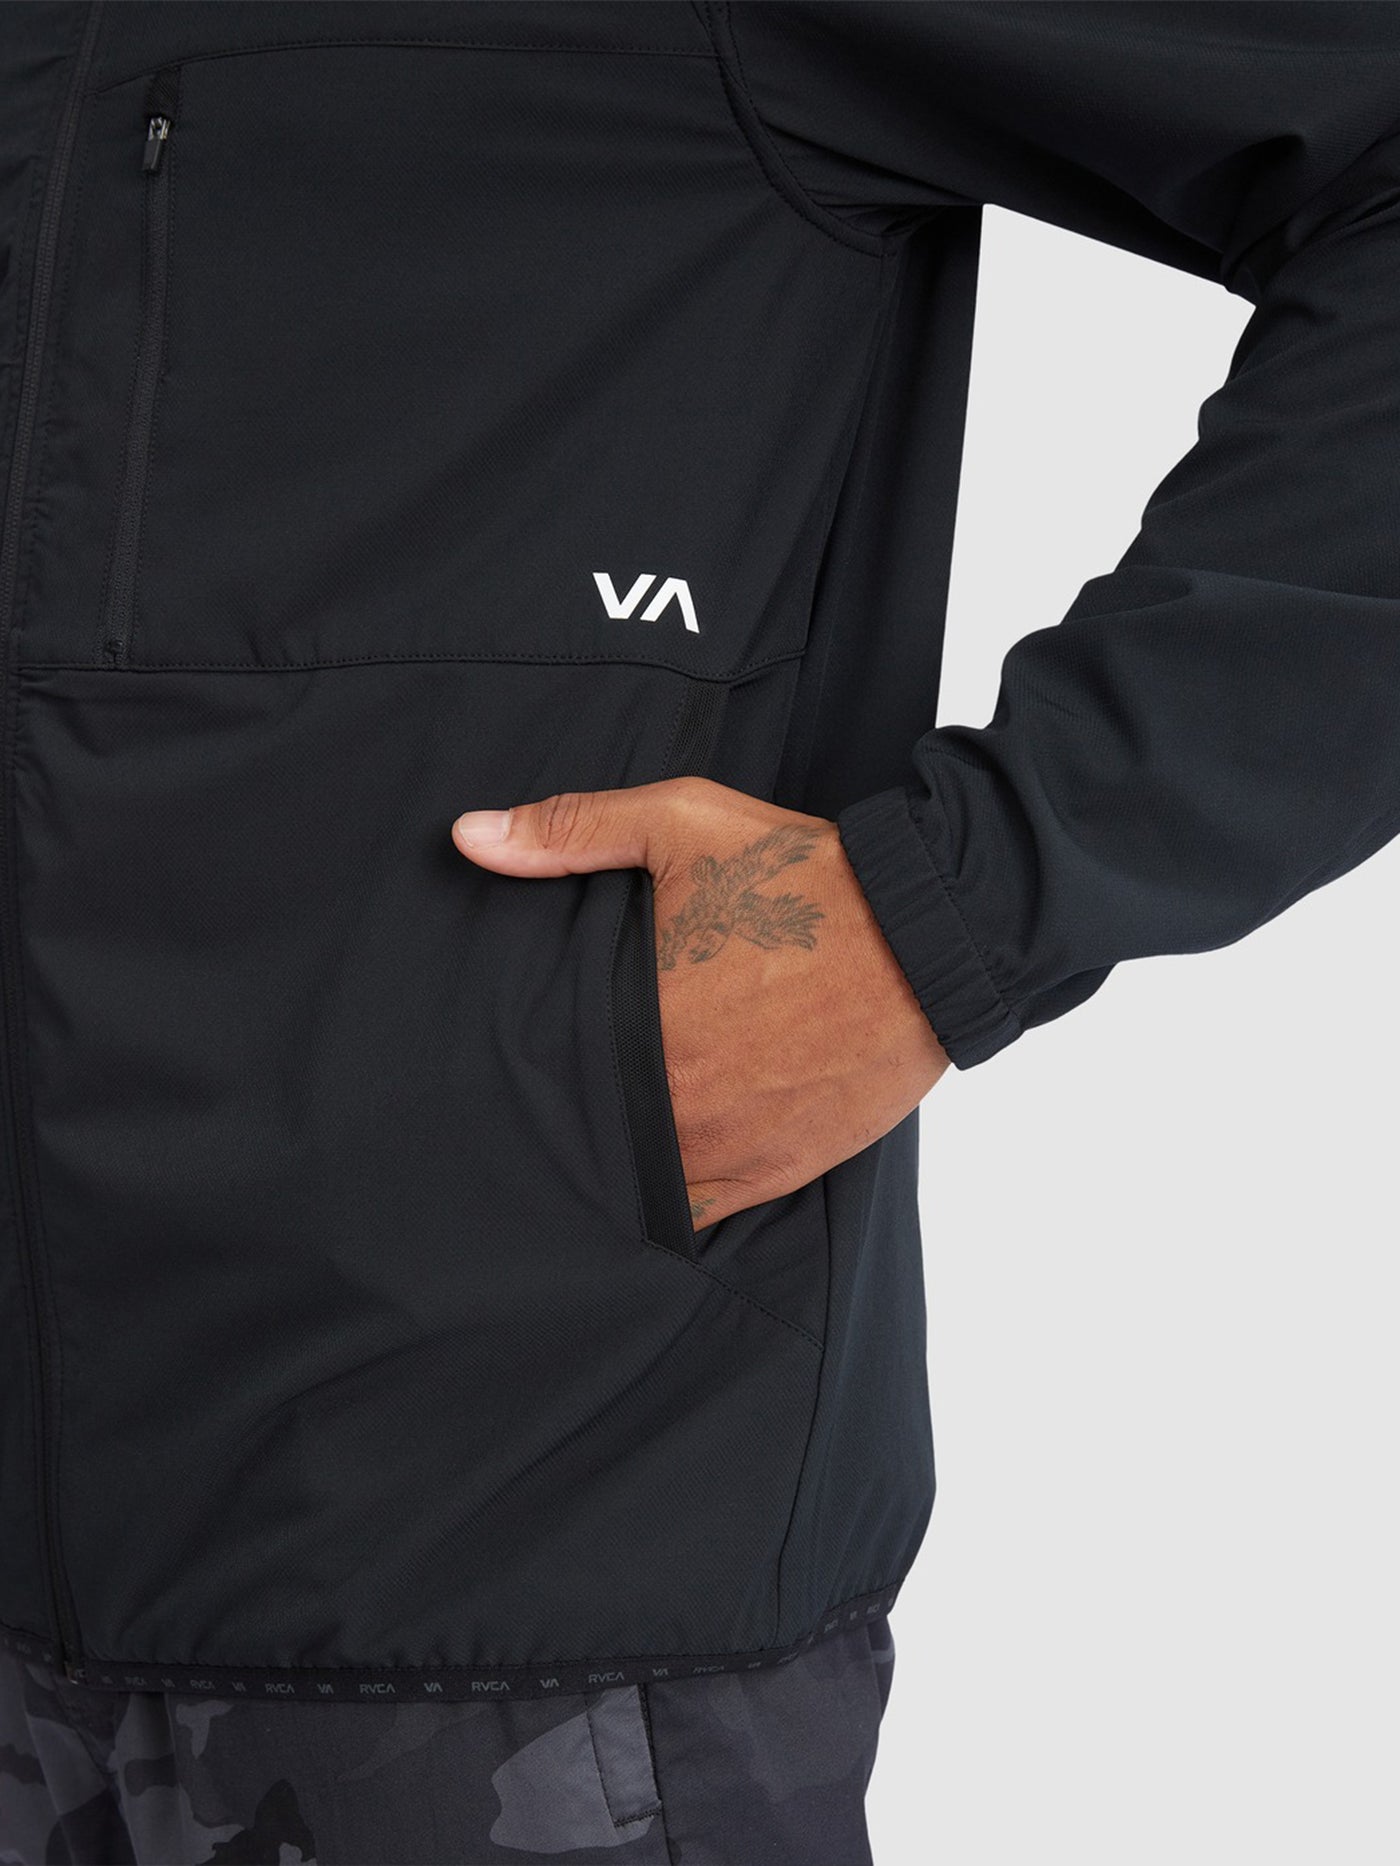 RVCA Yogger II Jacket